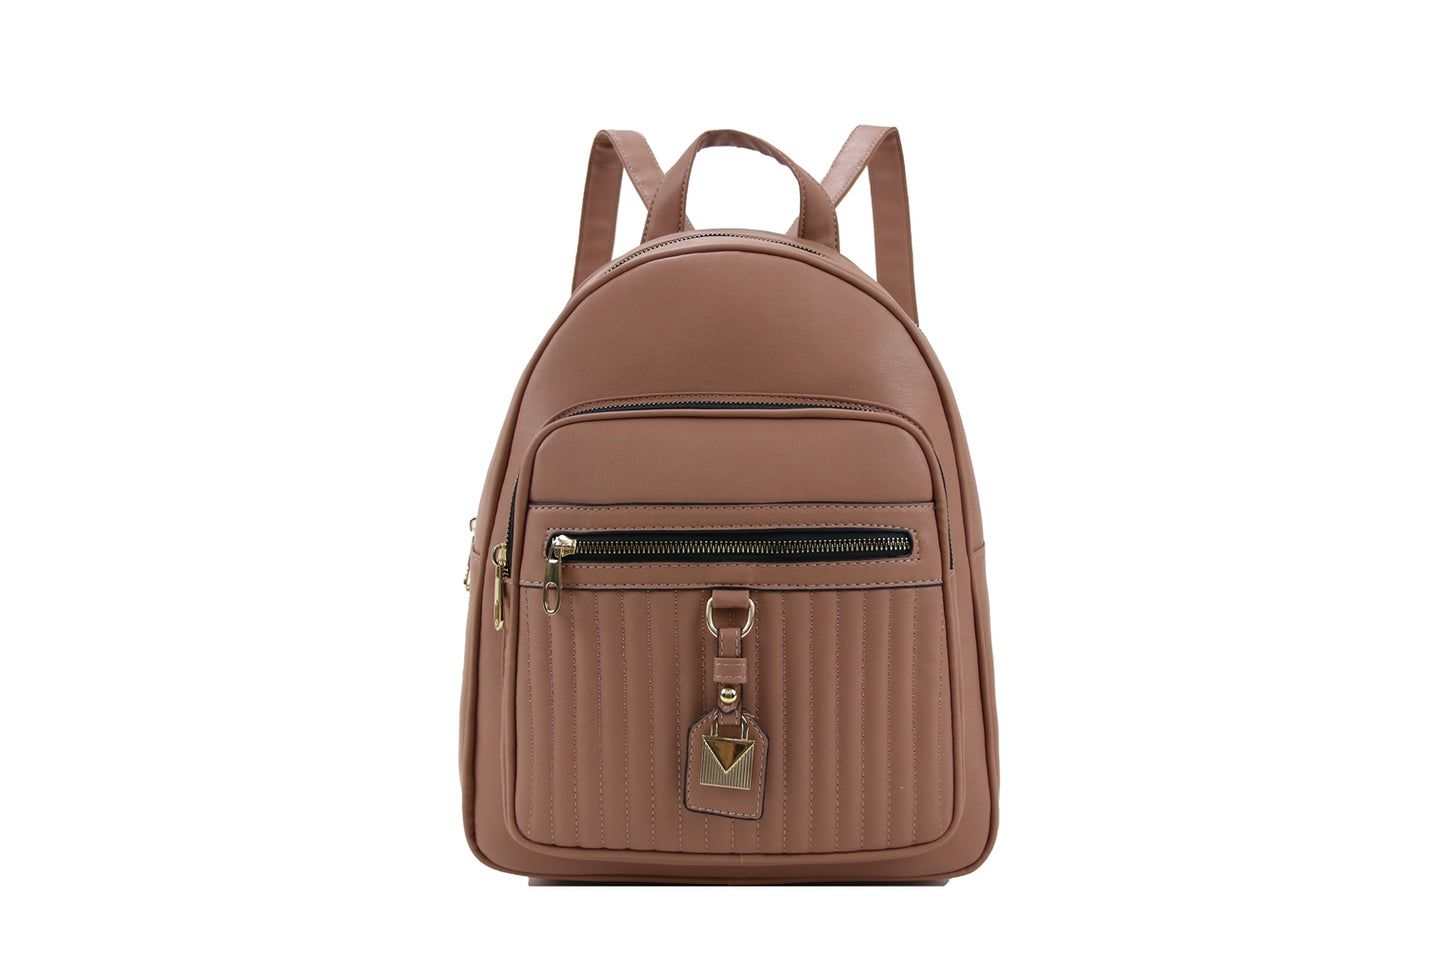 Backpack B1862